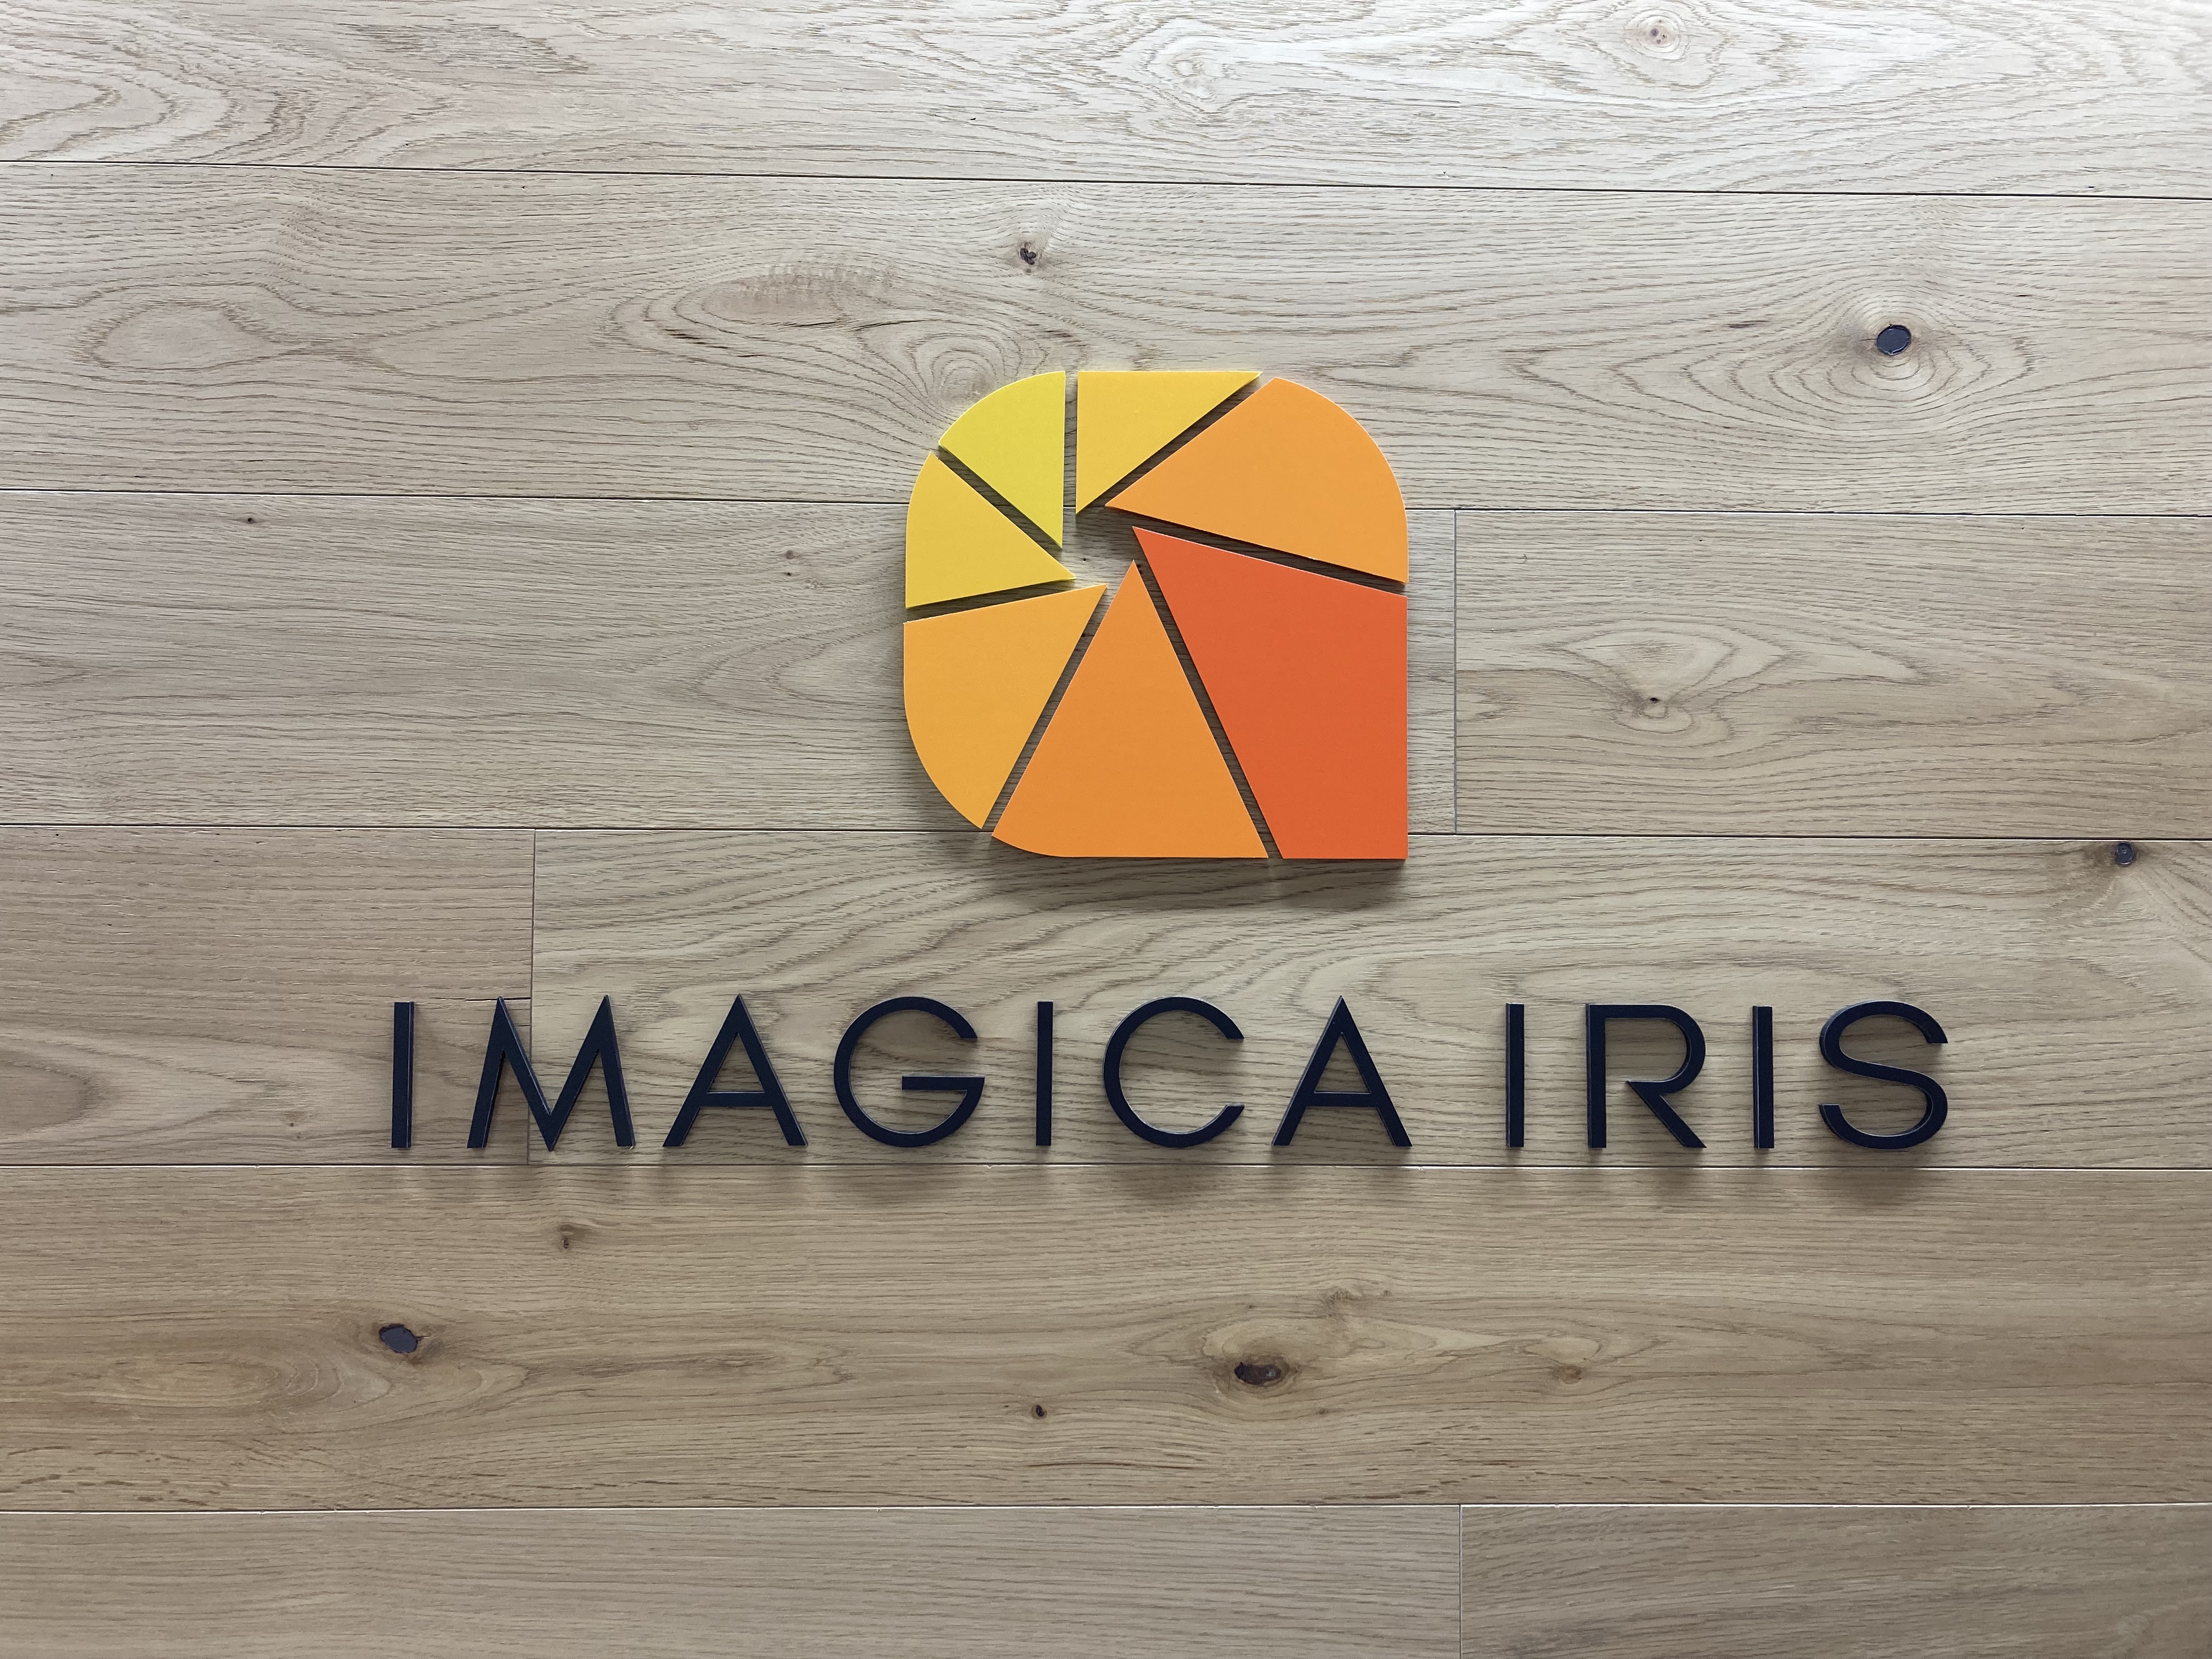 同社は、2019年1月に誕生し、“デジタルマーケティングにおける動画制作”を展開していくIMAGICA GROUP内の新生ベンチャー企業だ